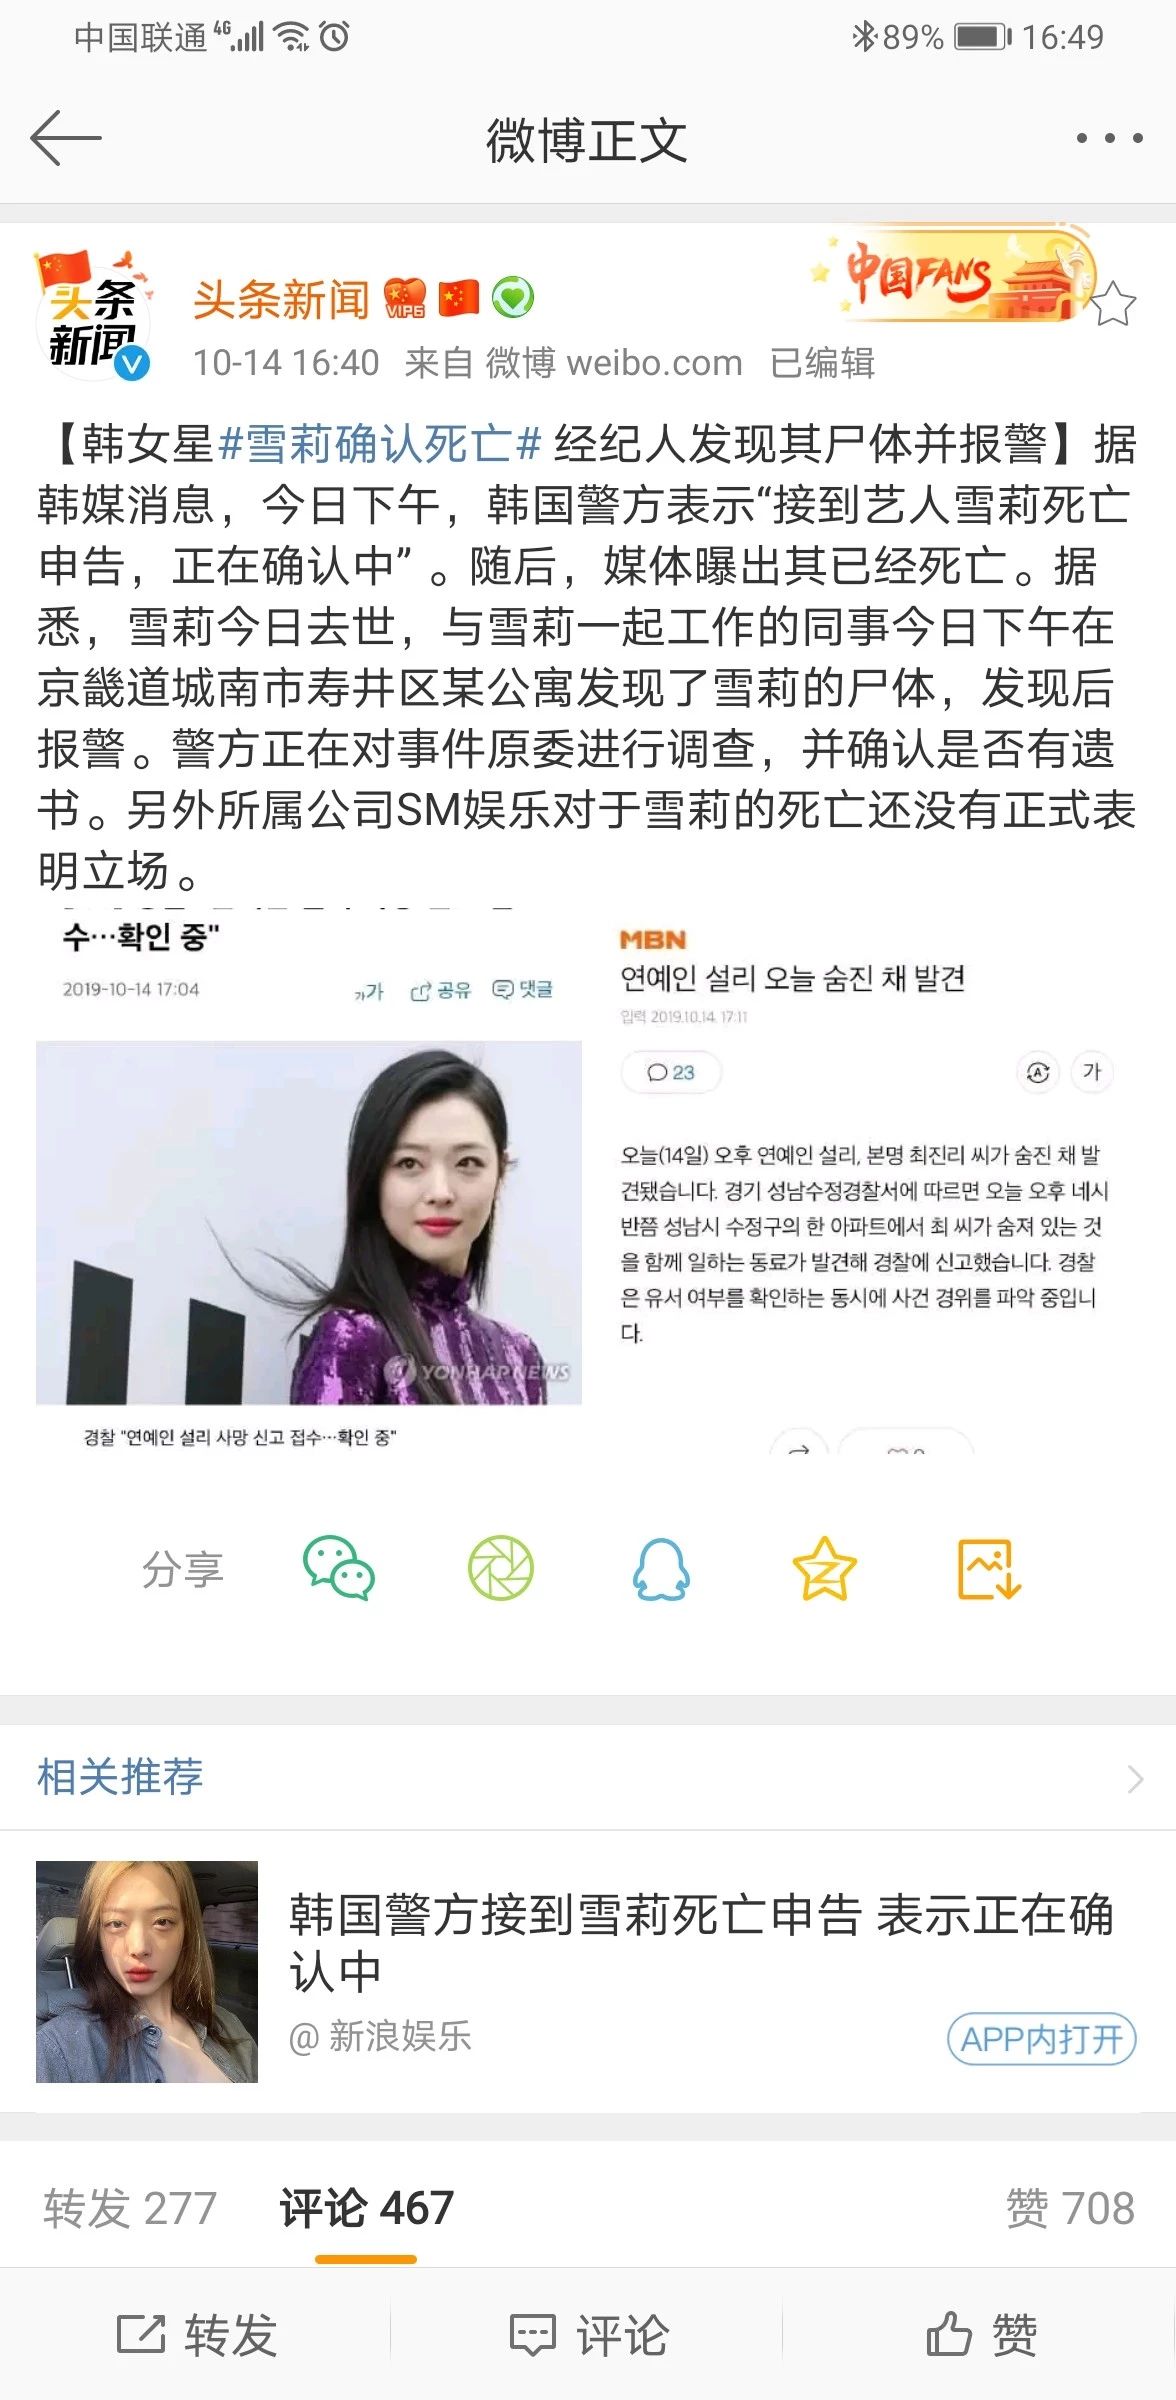 韩国女星崔雪莉确认在家中死亡 是sm公司第二位死亡艺人 明星八卦新闻 微信头条新闻公众号文章收集网